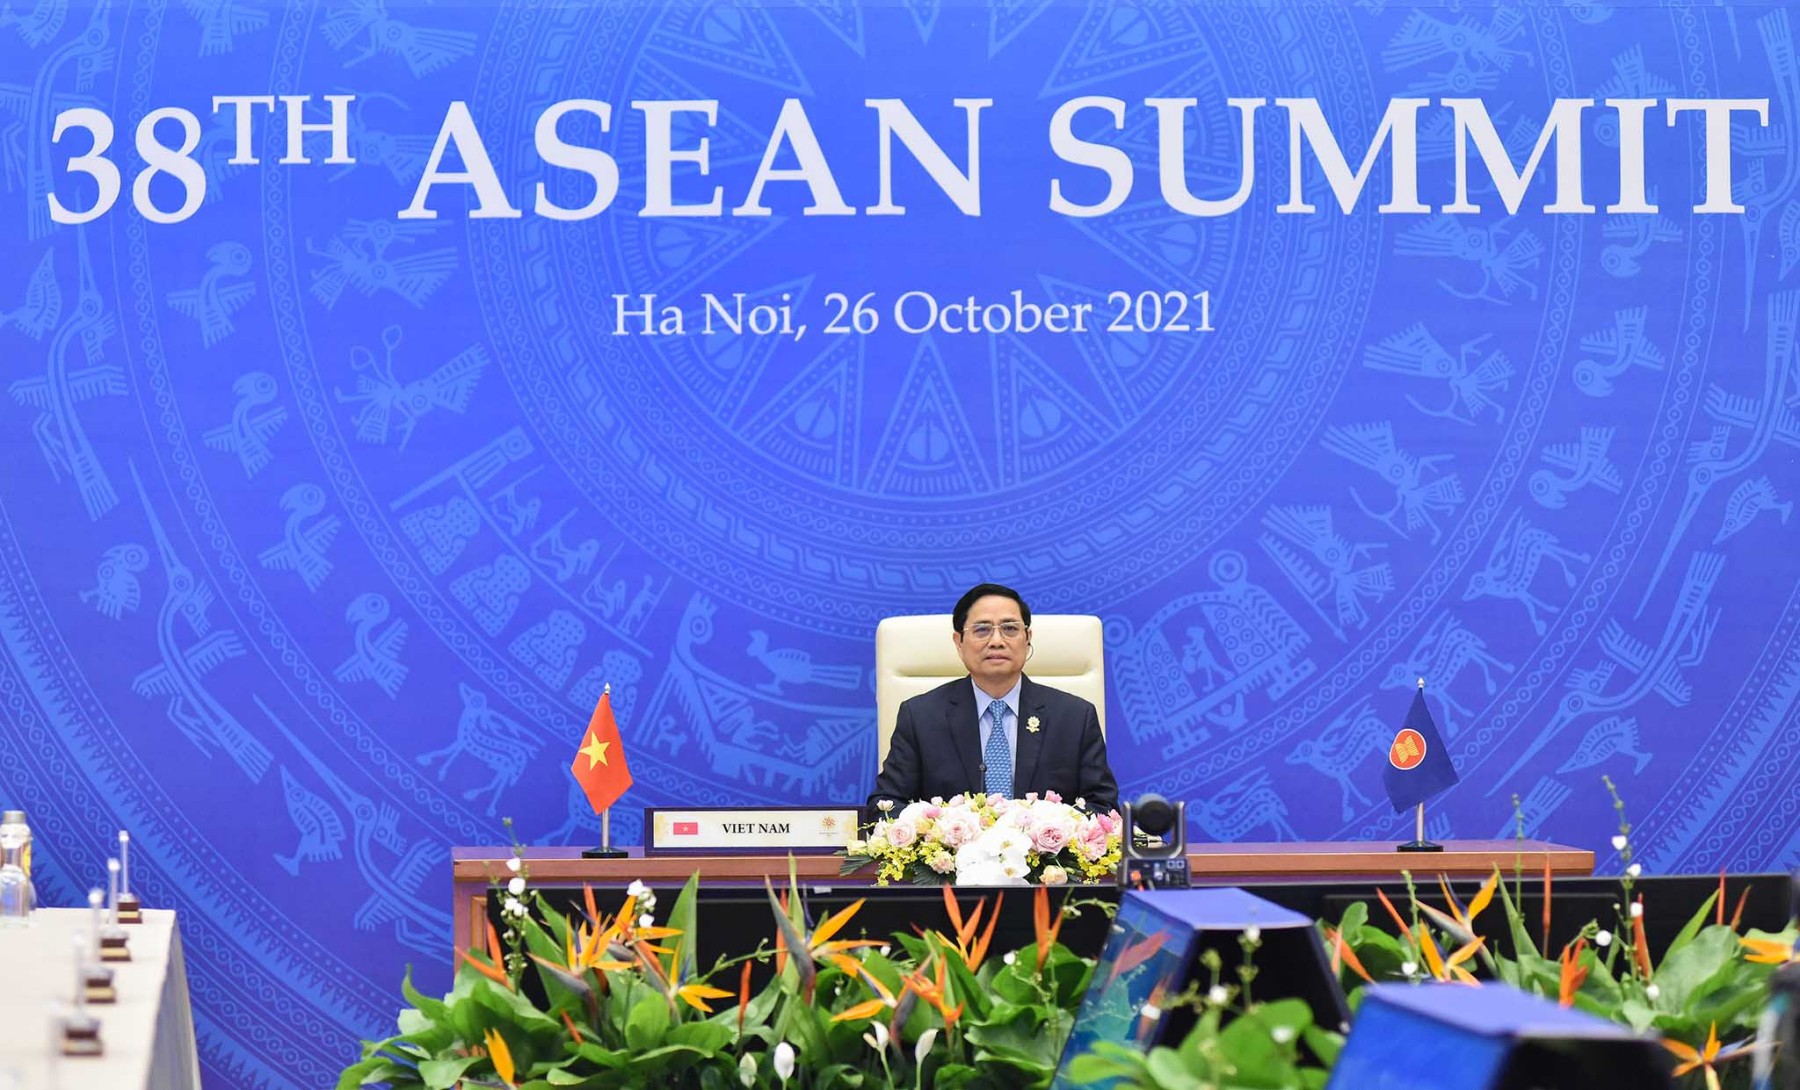 Thủ tướng đề nghị ASEAN định vị chỗ đứng mới trong thế giới đang tái định hình - Ảnh 1.